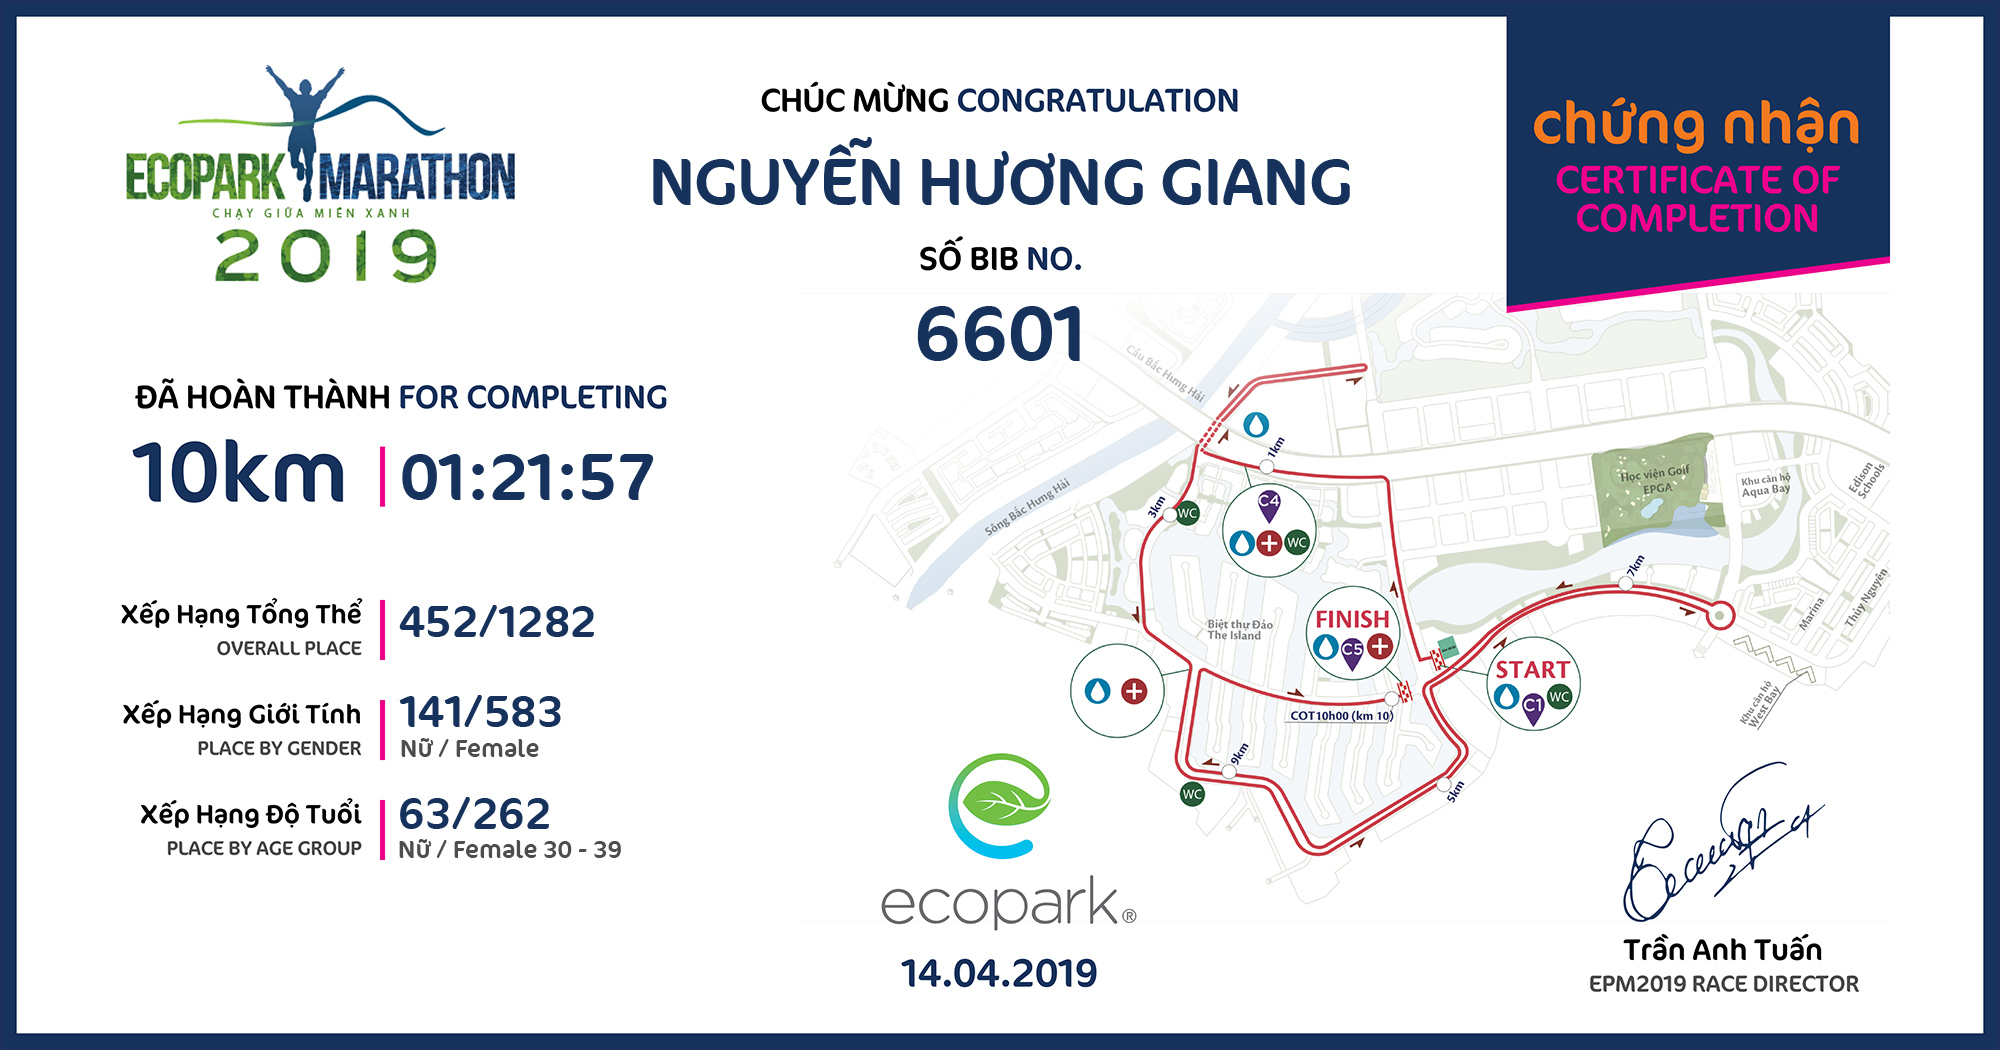 6601 - Nguyễn Hương Giang